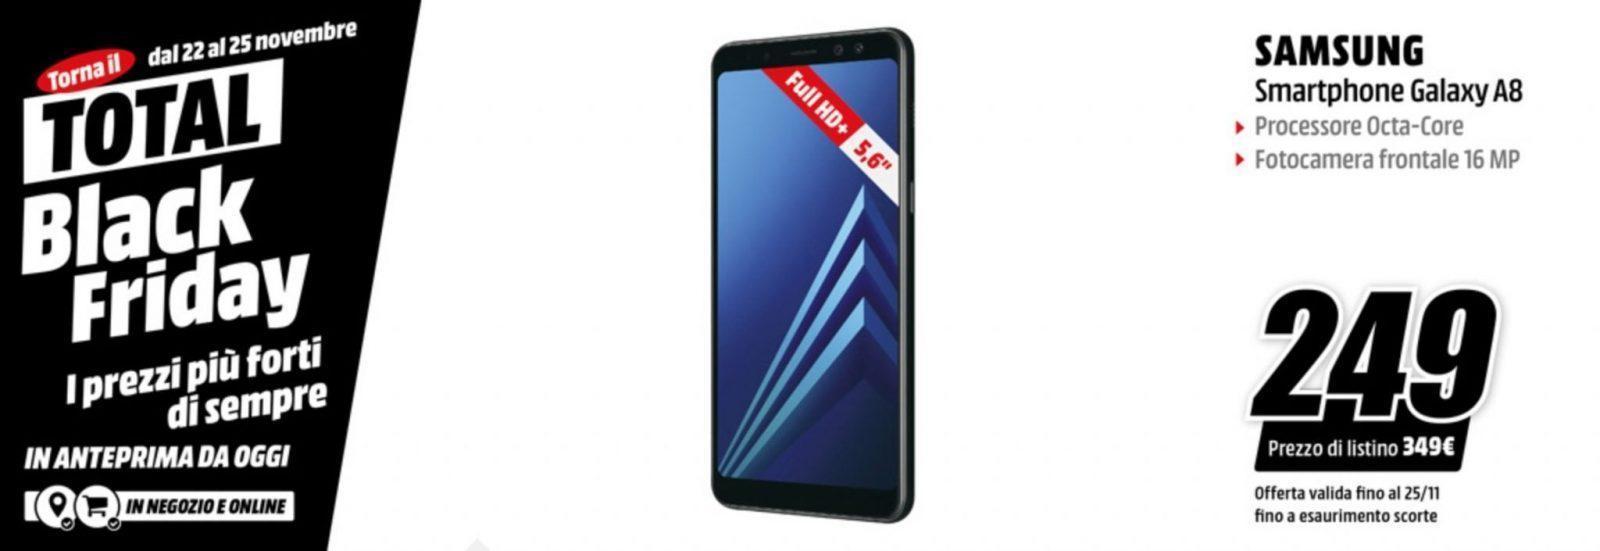 Samsung Galaxy A8 smartphone MediaWorld Black Friday 2018